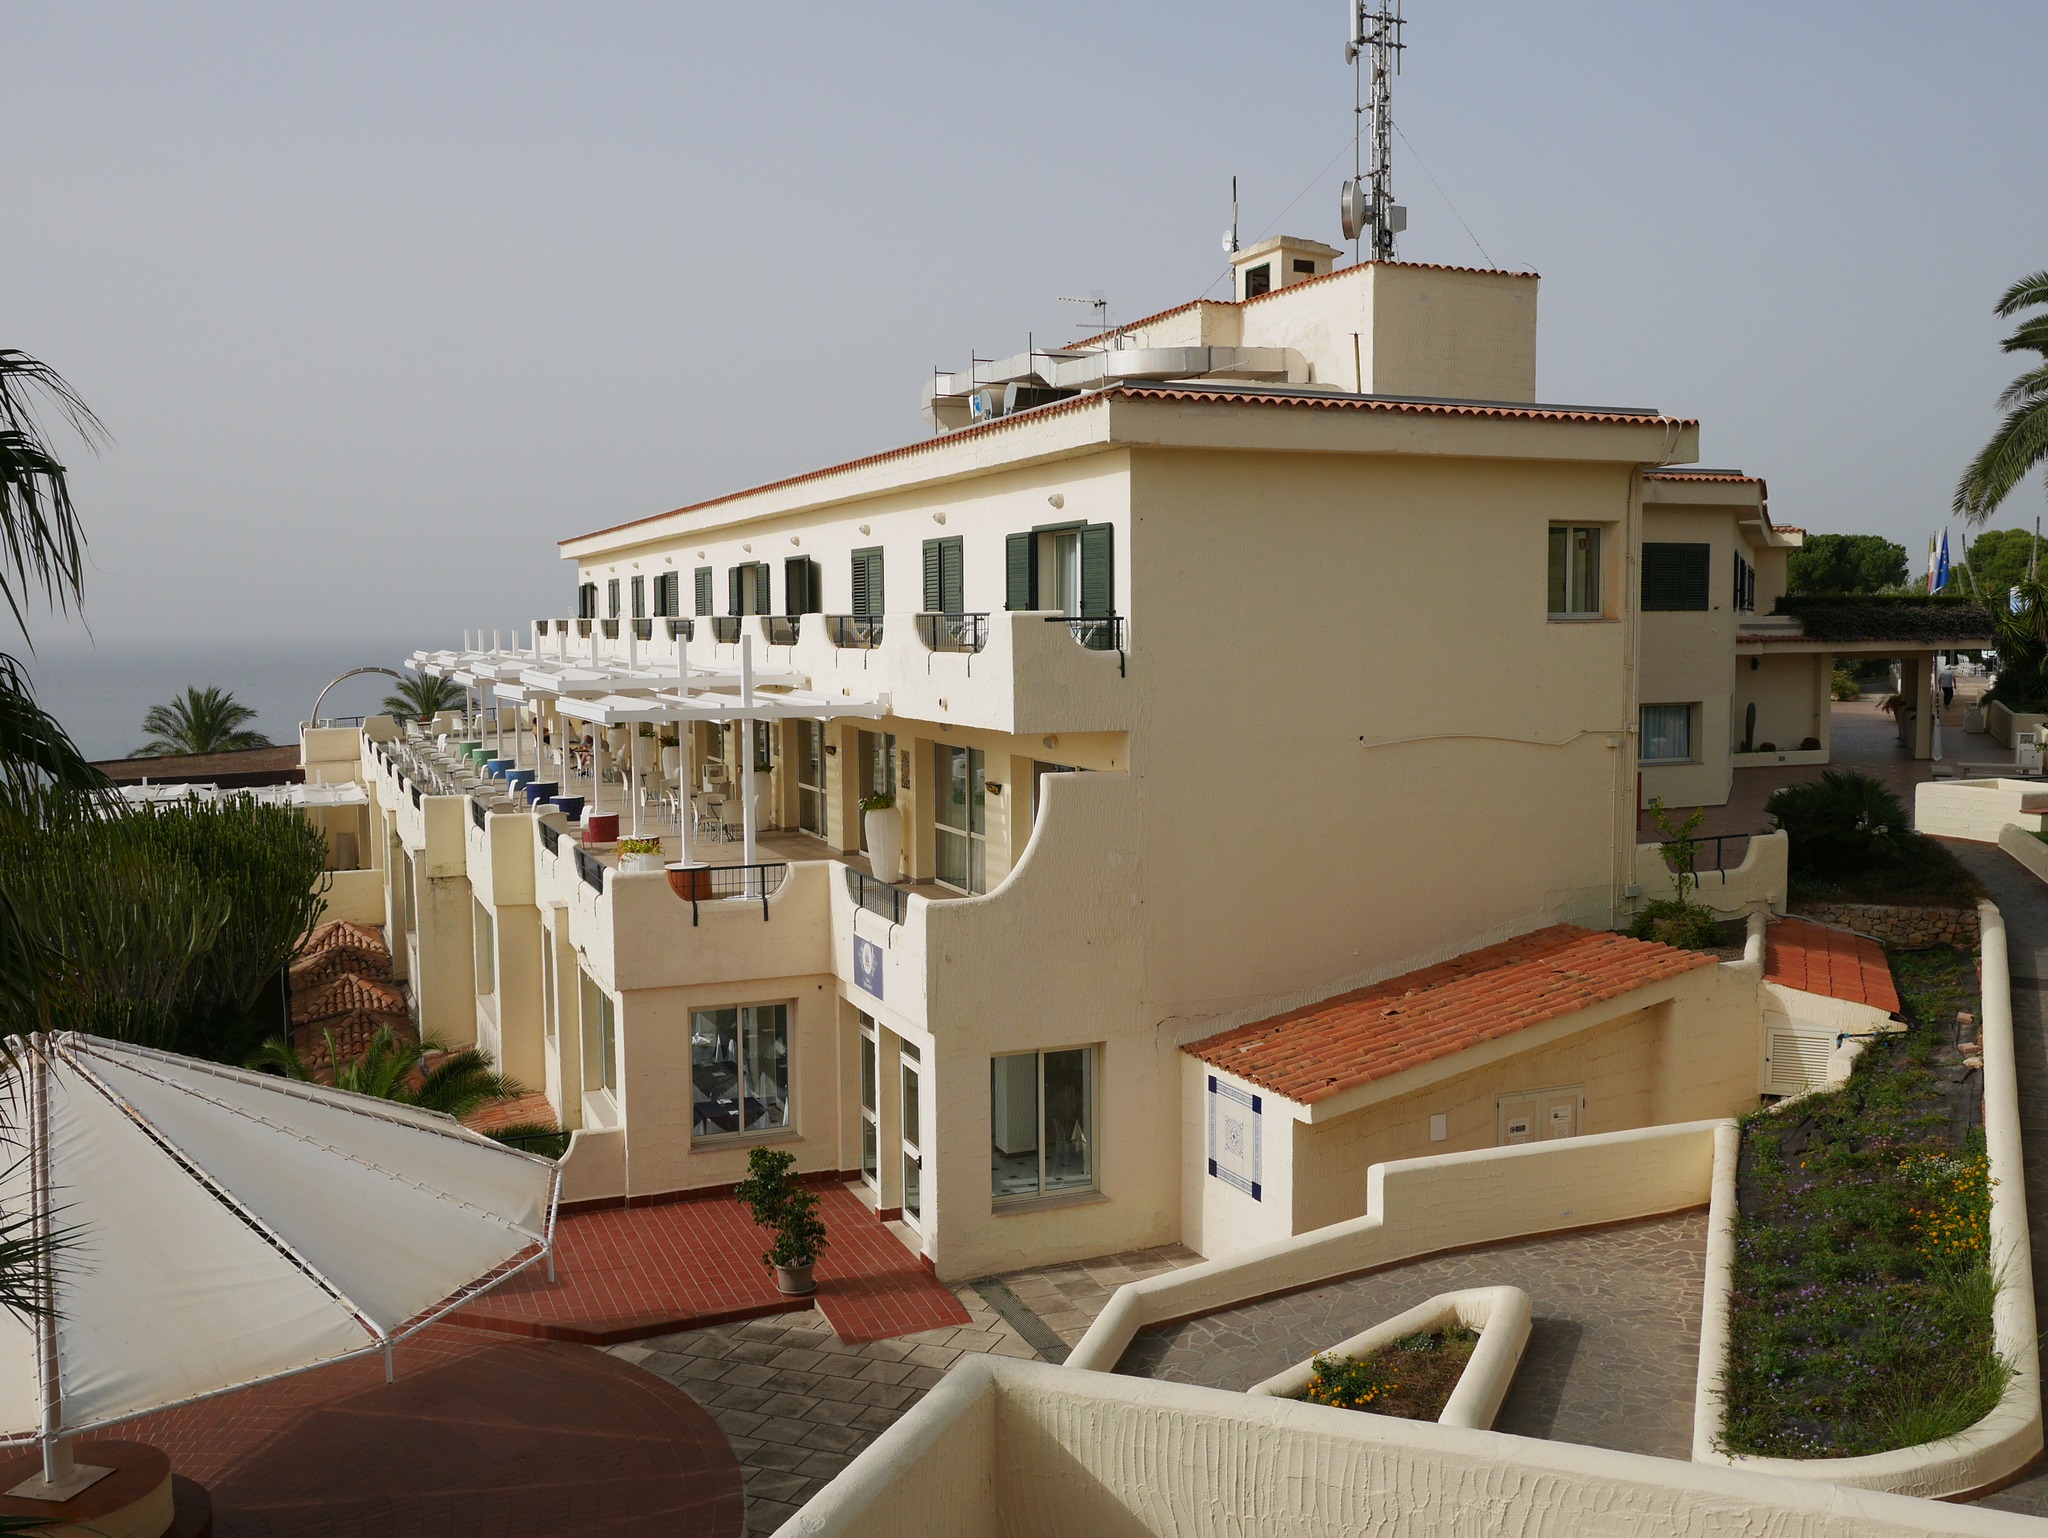 CDSHotel Terrasini view from room balcony